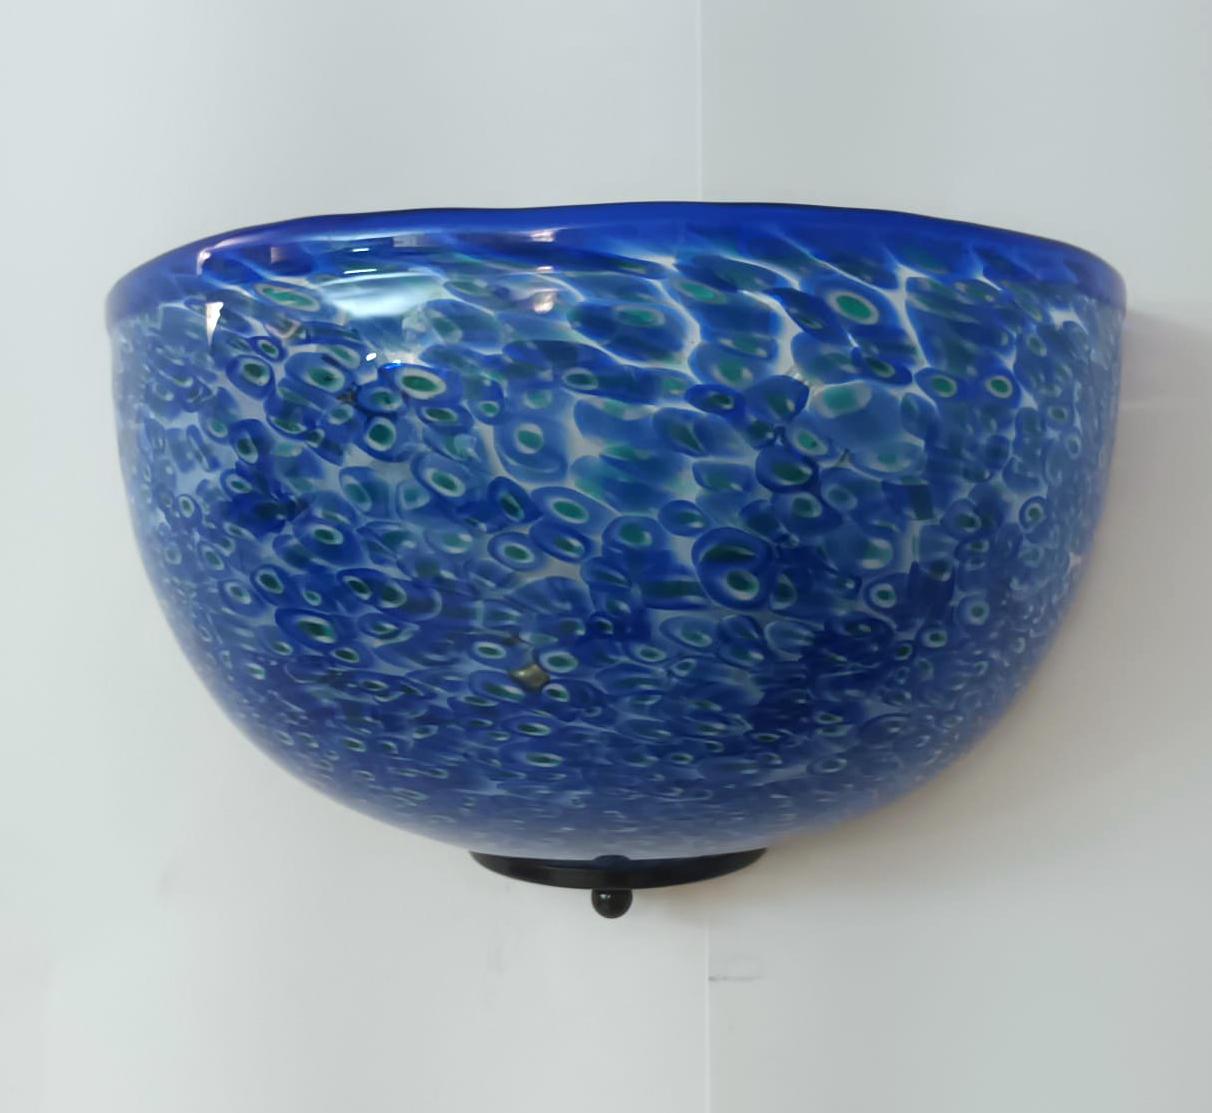 Italienische Wandleuchten mit blauen Murano-Gläsern und geschmolzenem Murrin, entworfen von Gae Aulenti für Vistosi, hergestellt in Italien um 1960
Maße: Höhe 7 Zoll, Breite 11 Zoll, Tiefe 5,5 Zoll
2 Leuchten / Typ E26 oder E27 / je max. 60W
3